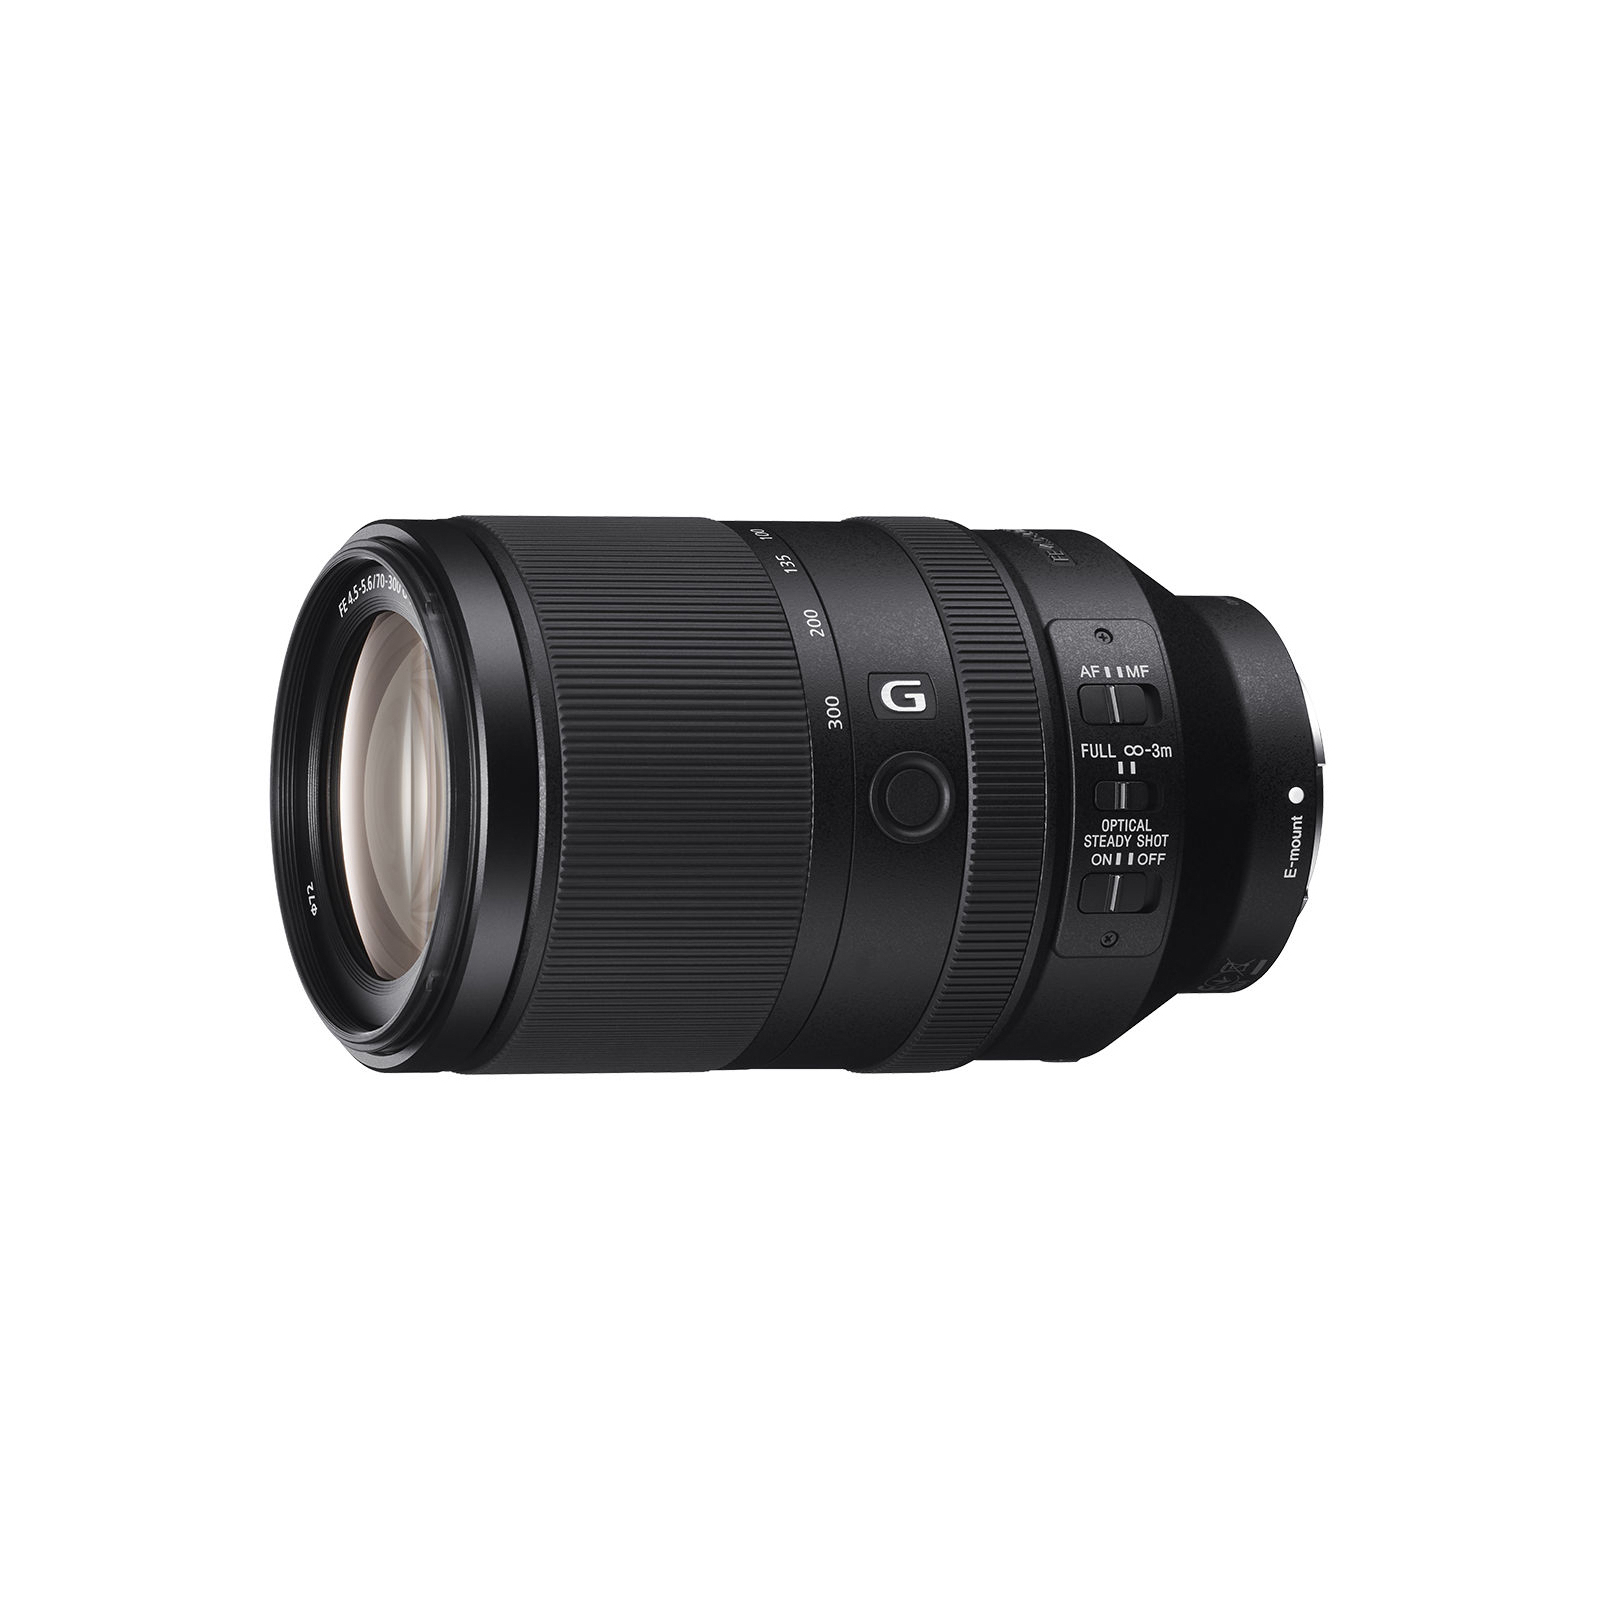 Об'єктив Sony 70-300mm, f/4.5-5.6 G OSS для камер NEX FF (SEL70300G.SYX)